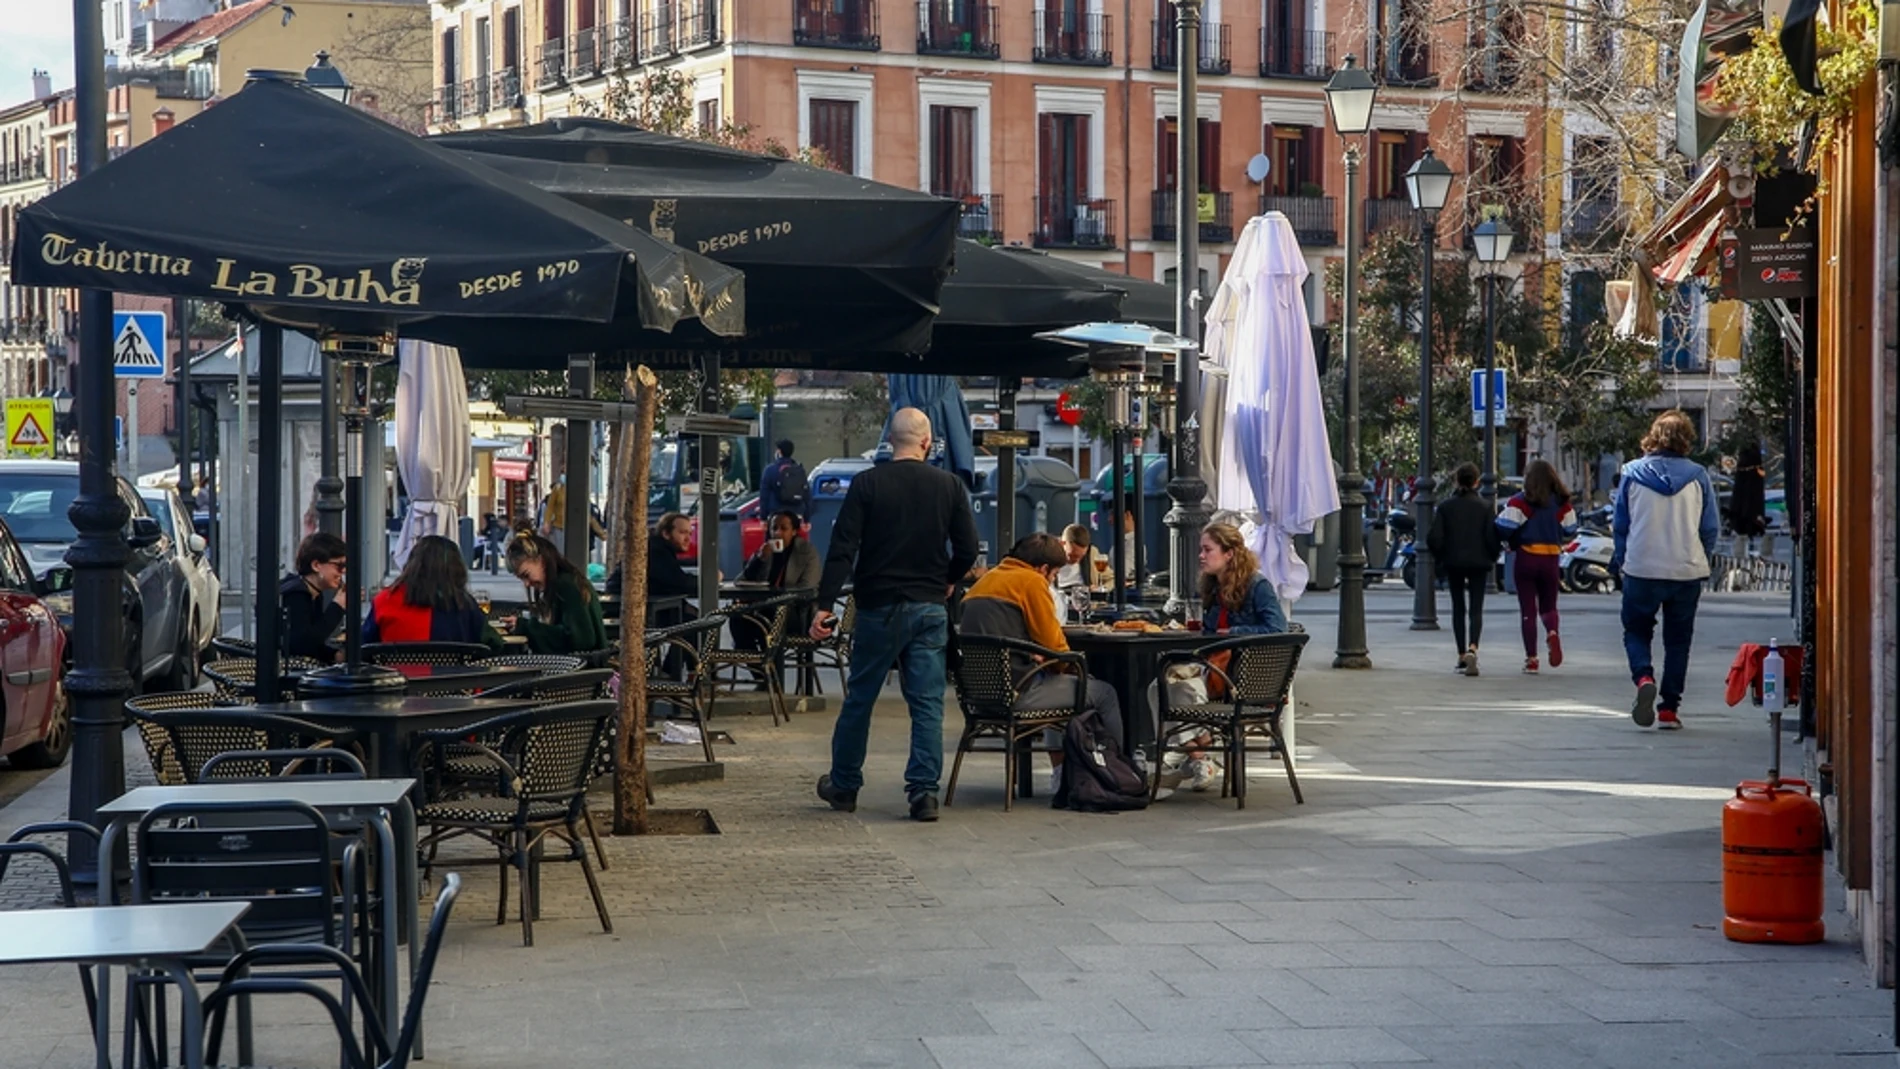 laSexta Noticias 14:00 (05-02-21) Madrid amplía desde hoy de cuatro a seis los grupos en terrazas y obliga a usar mascarillas en la hostelería